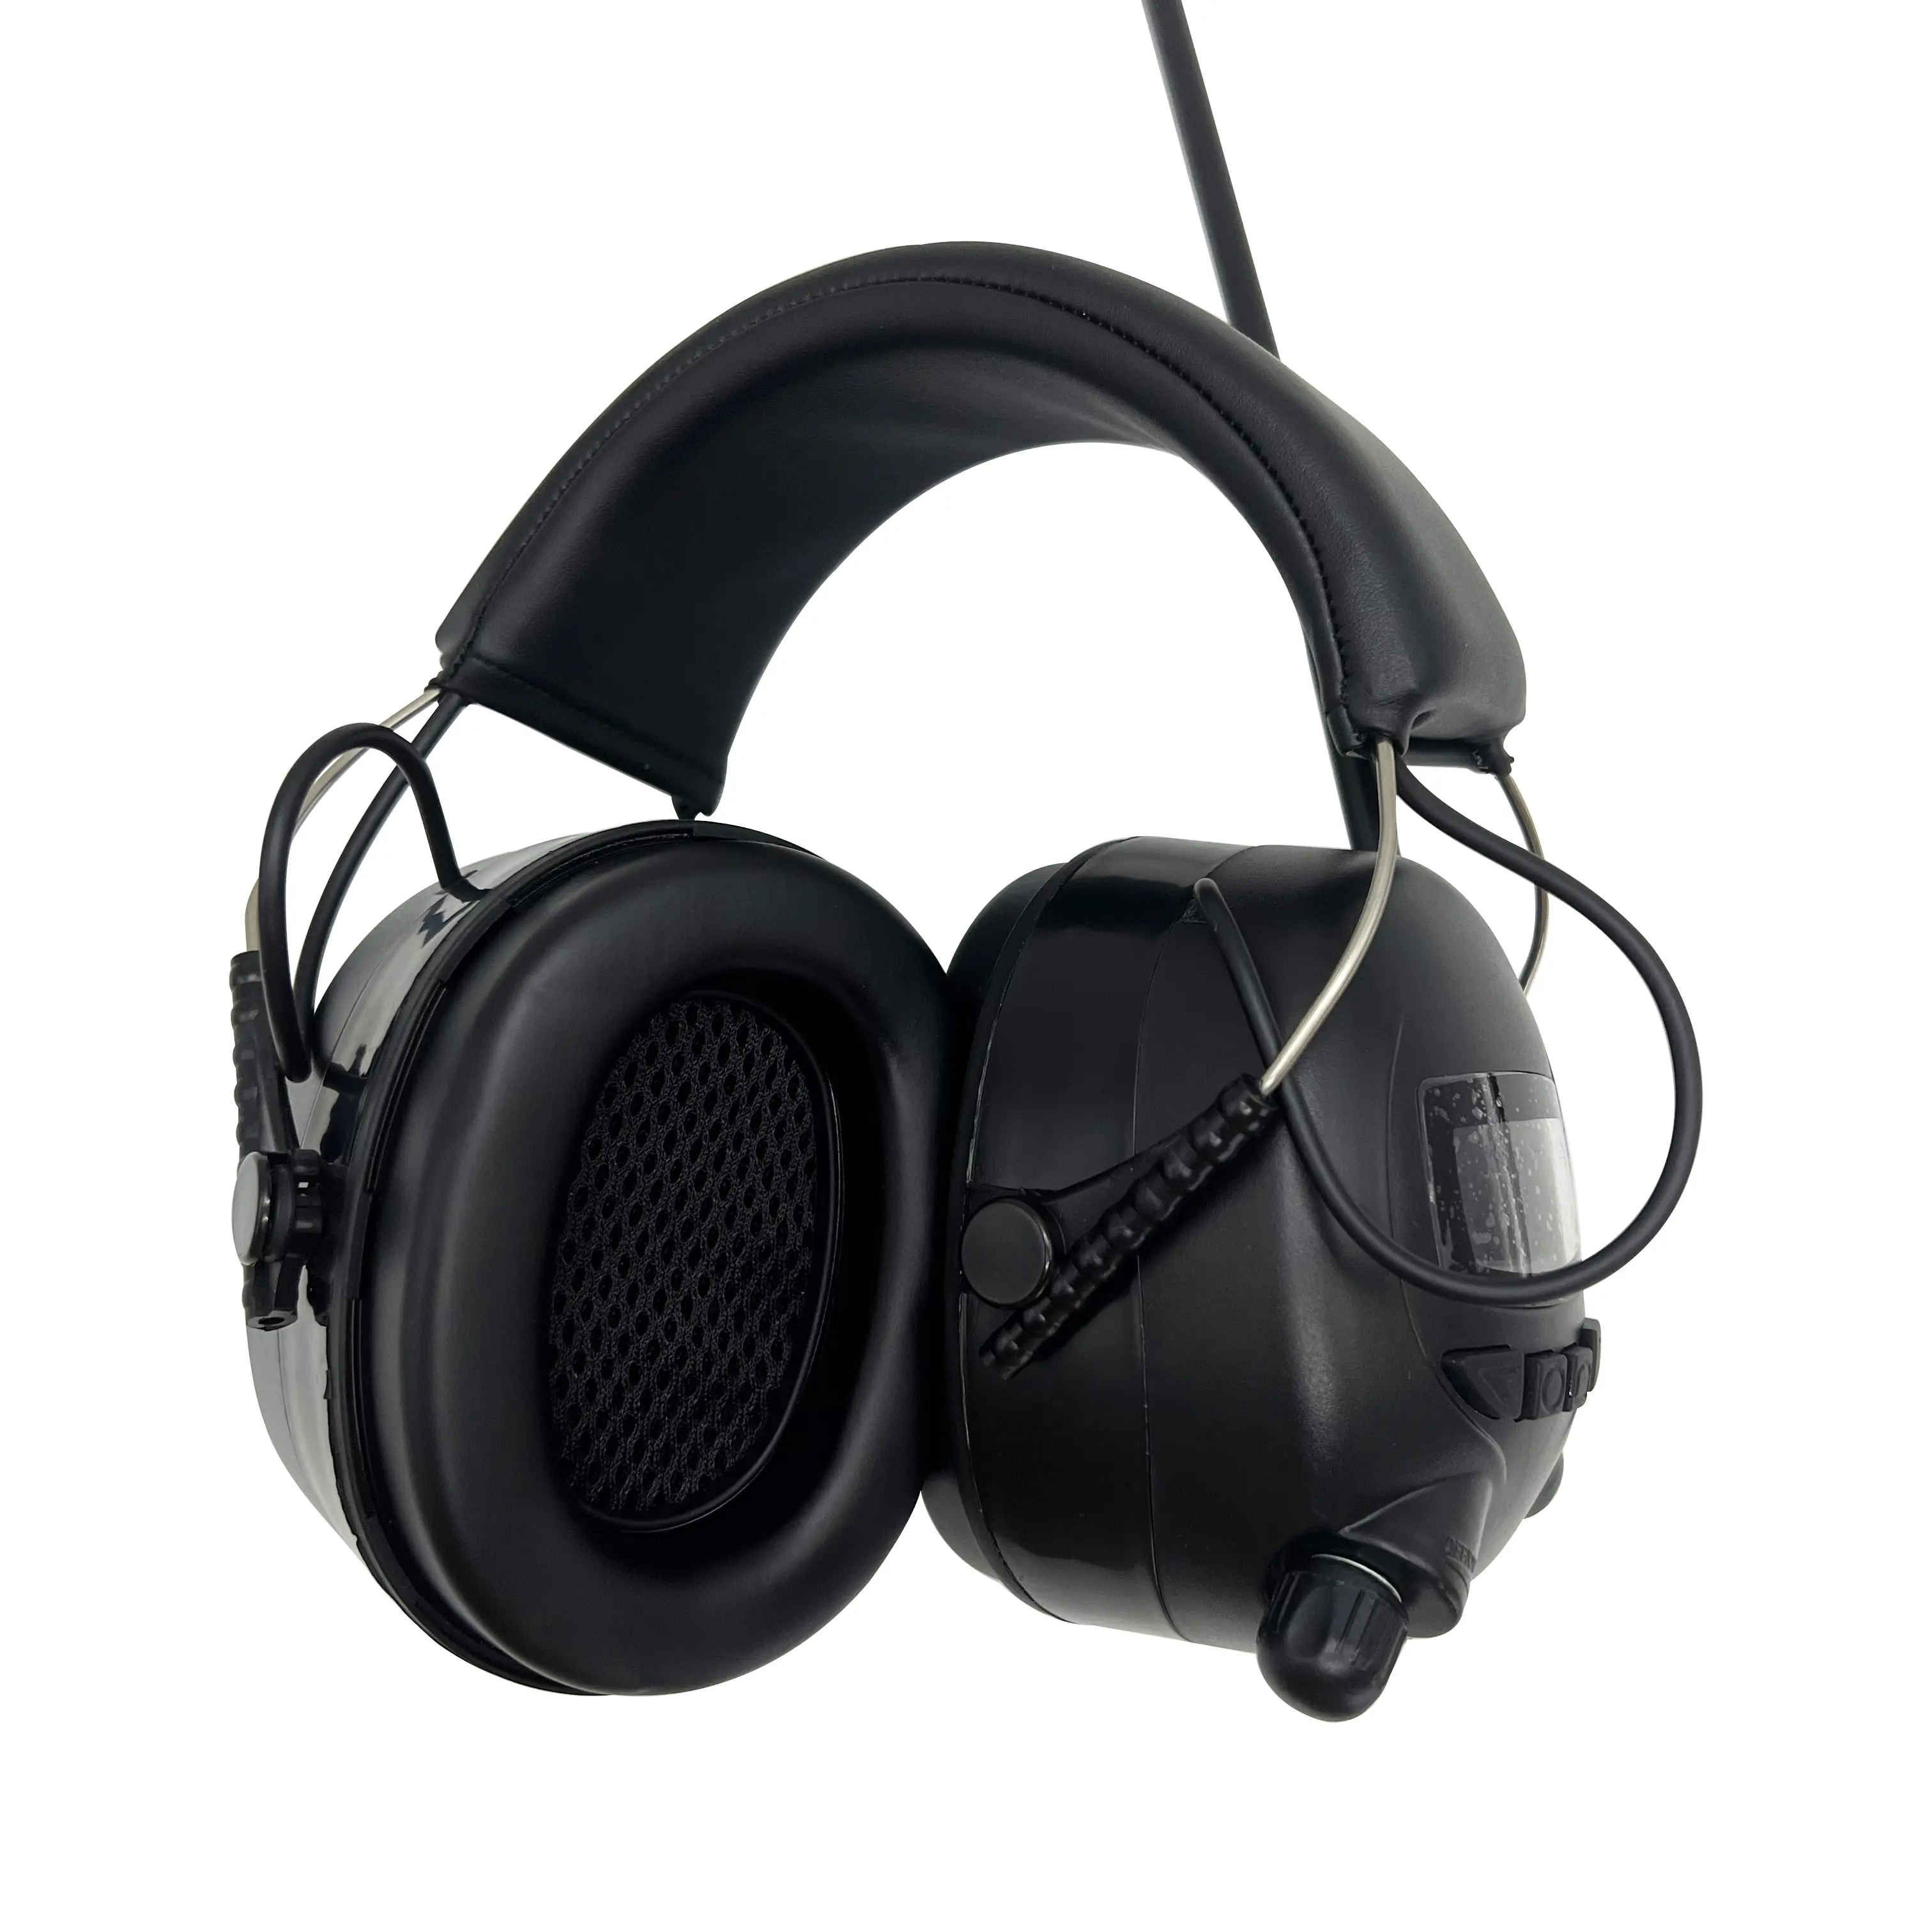 Cancelación de ruido inalámbrica industrial Am/FM Radio Auriculares Protección auditiva orejeras con micrófono externo